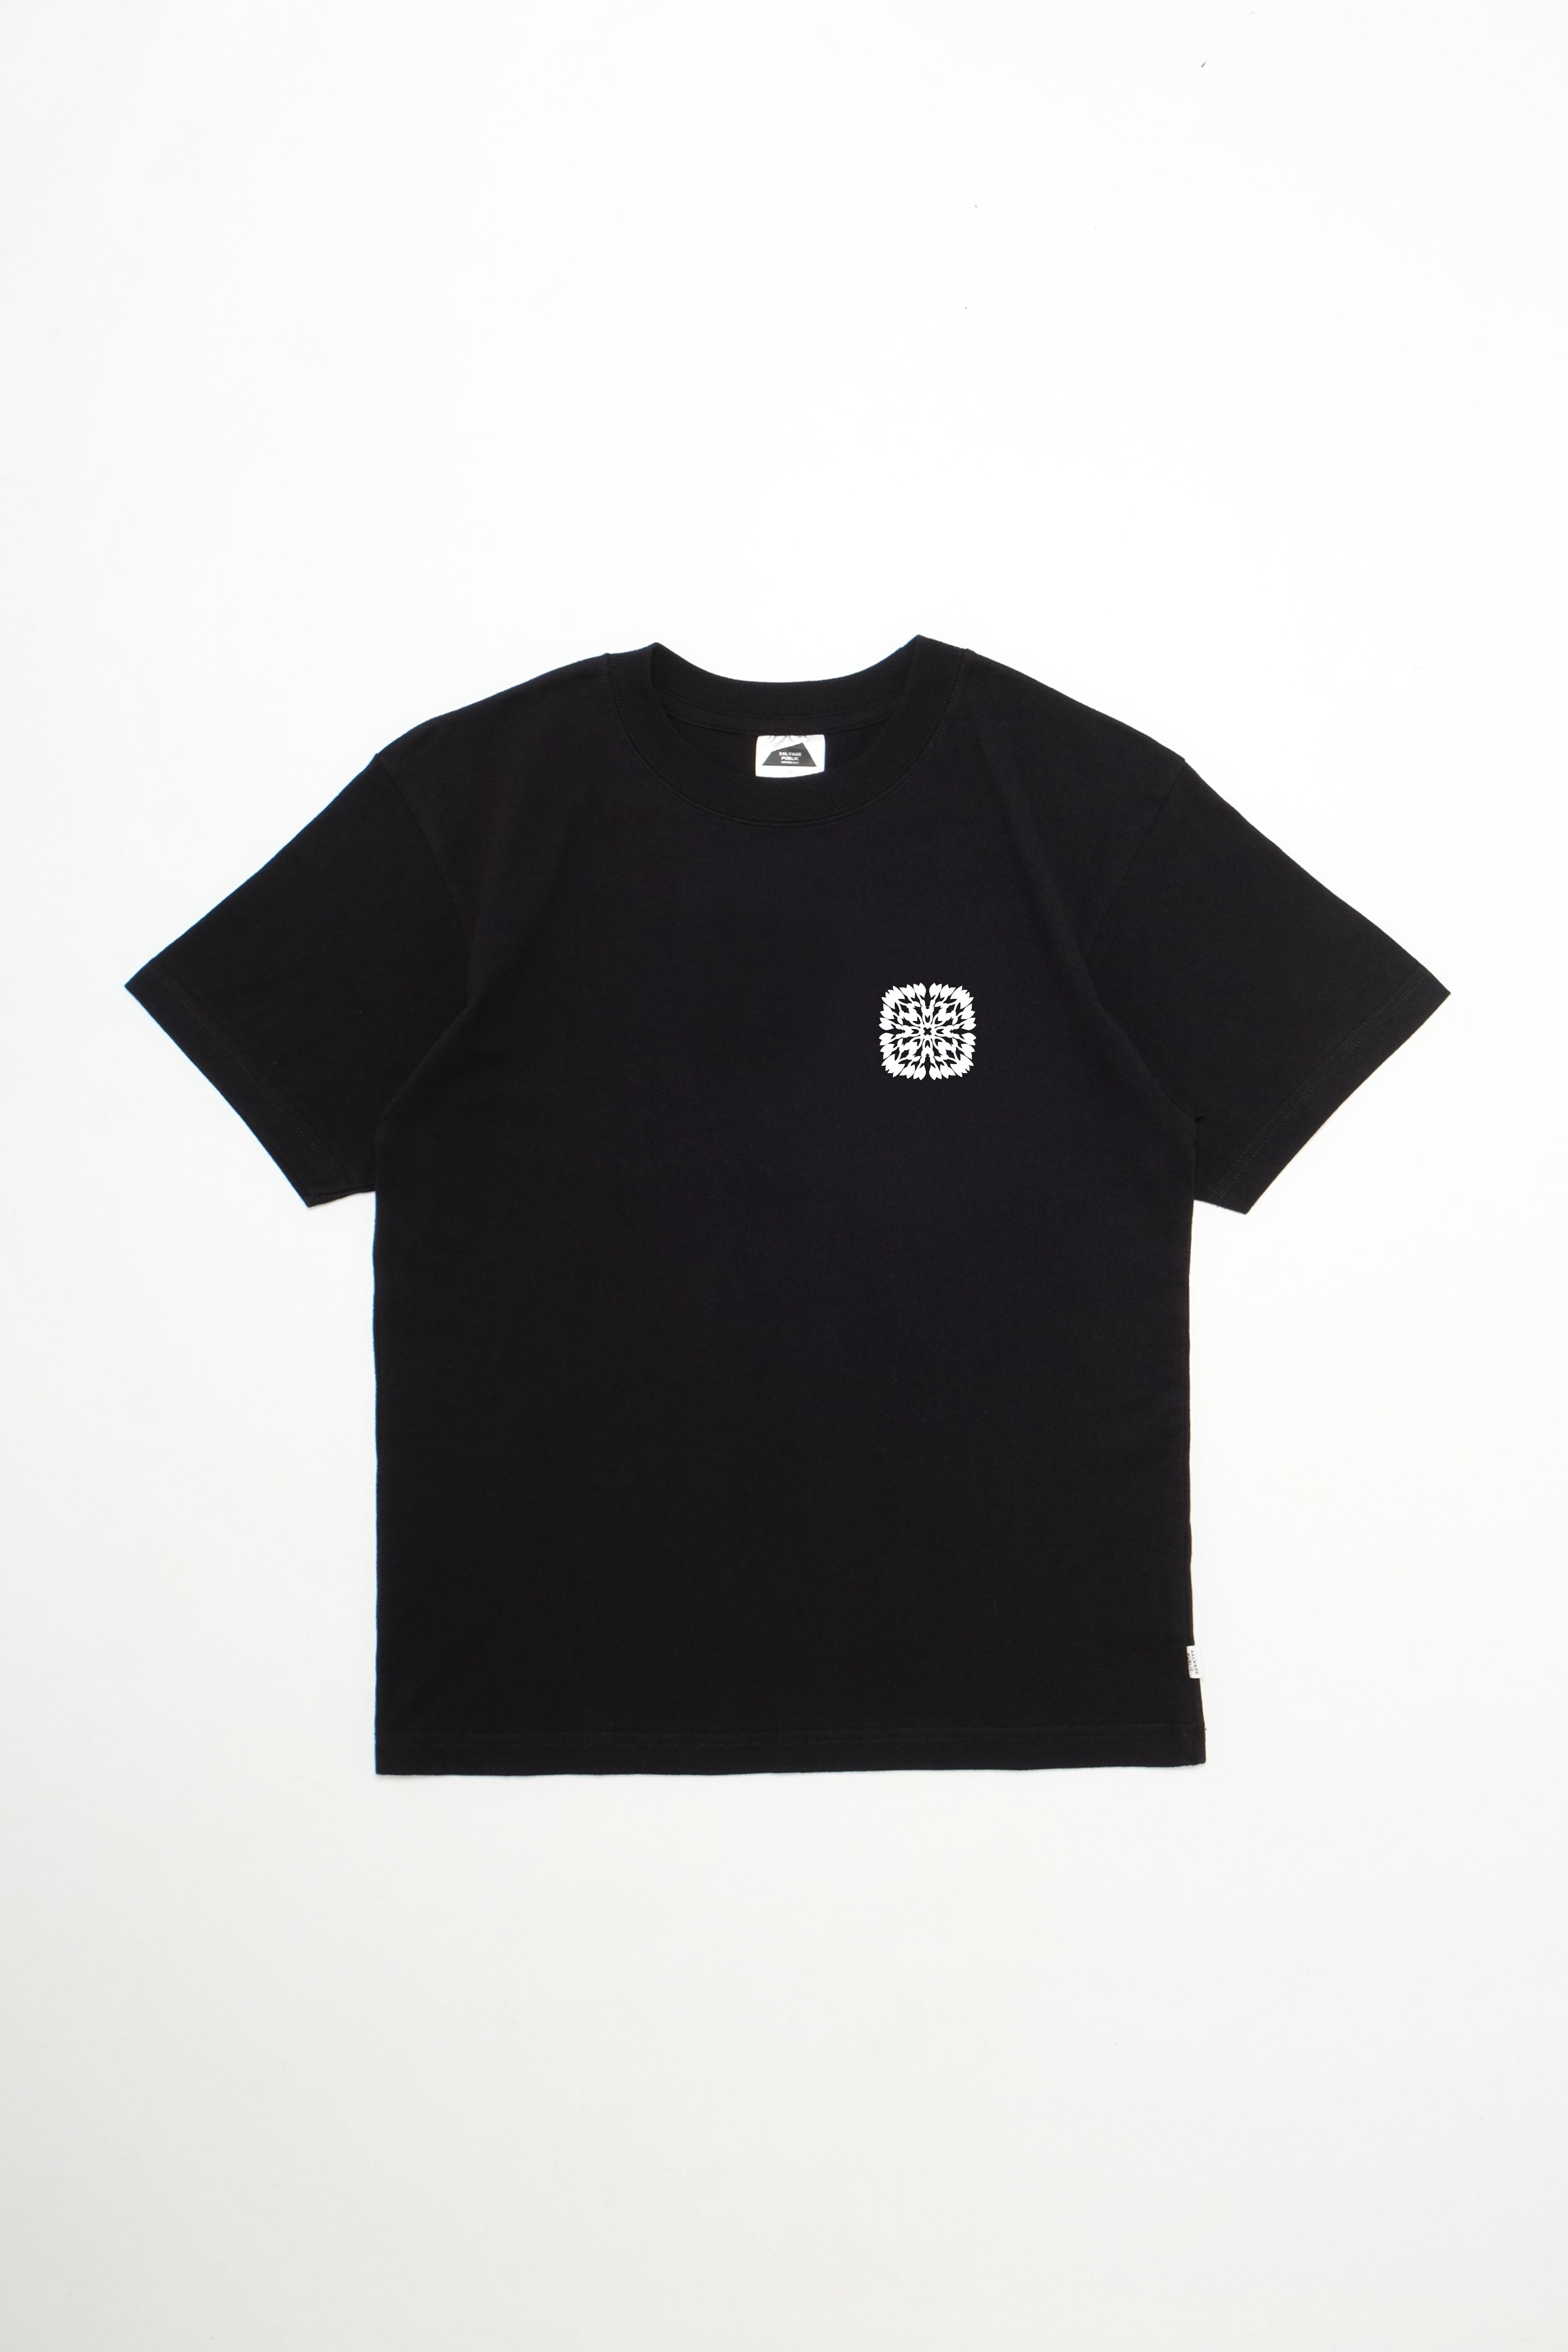 T-Shirt - Kalo - Black